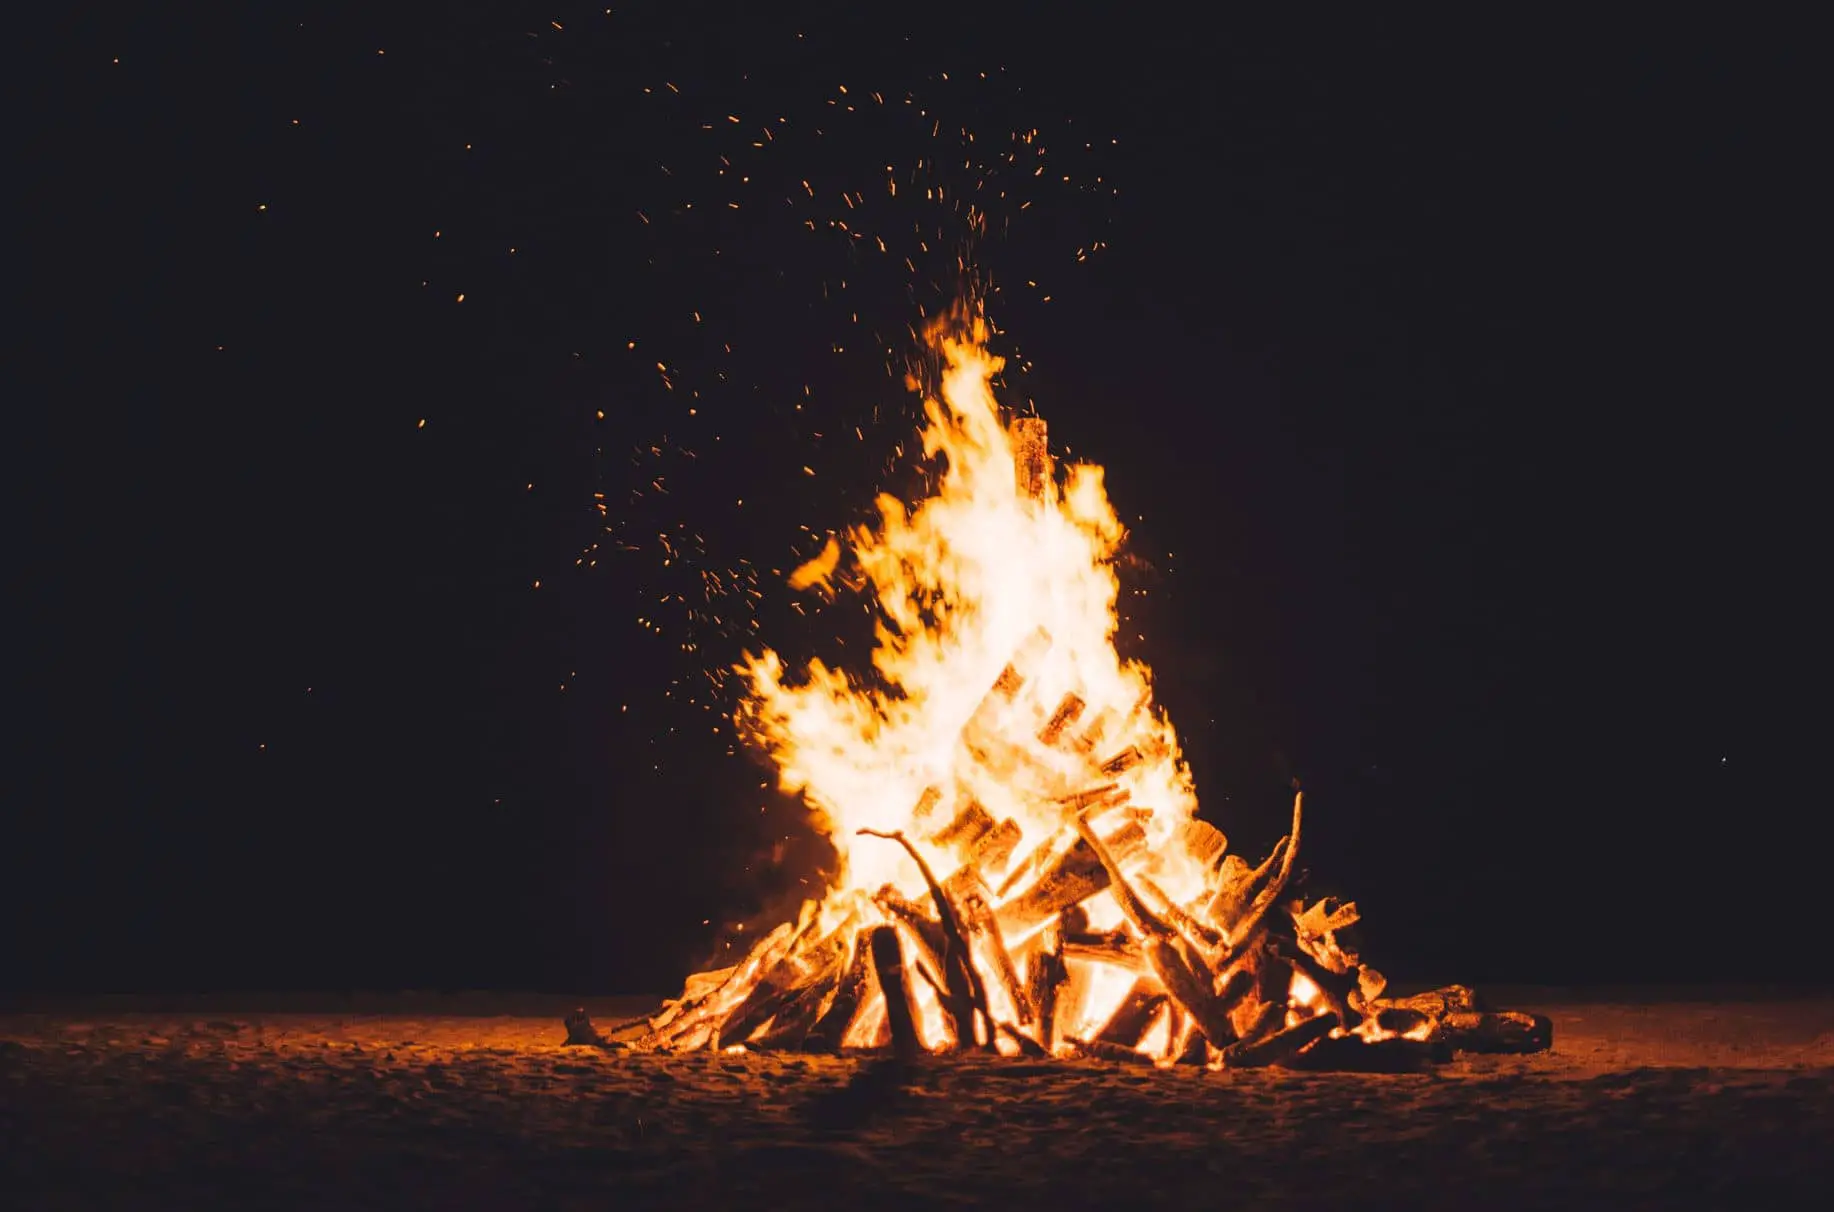 bonfire on the beach